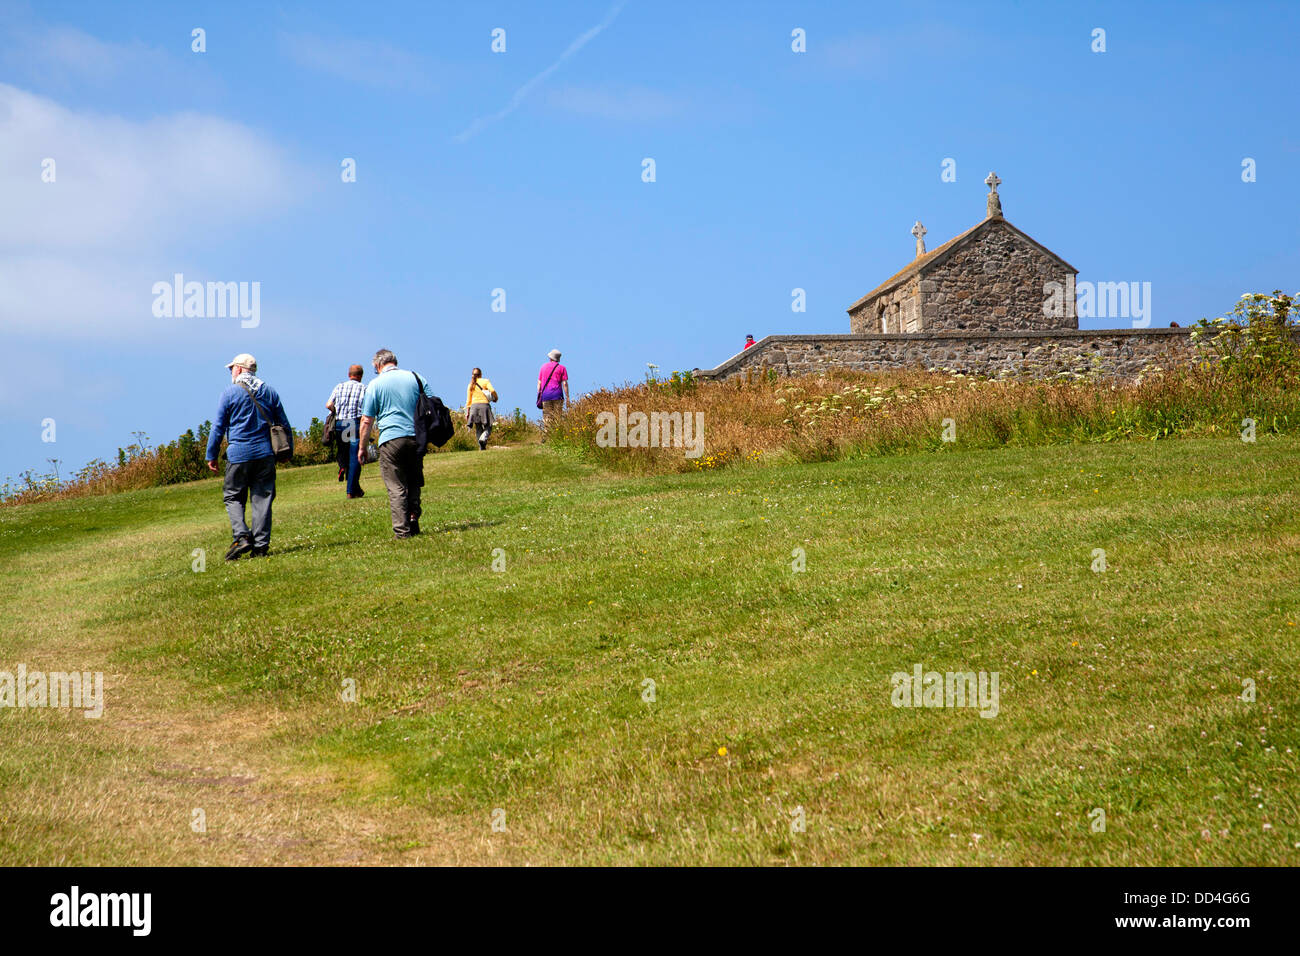 L'île de St Ives Cornwall chapelle du pêcheur. Balades touristiques jusqu'à la colline de la Chapelle Saint-Nicolas Banque D'Images